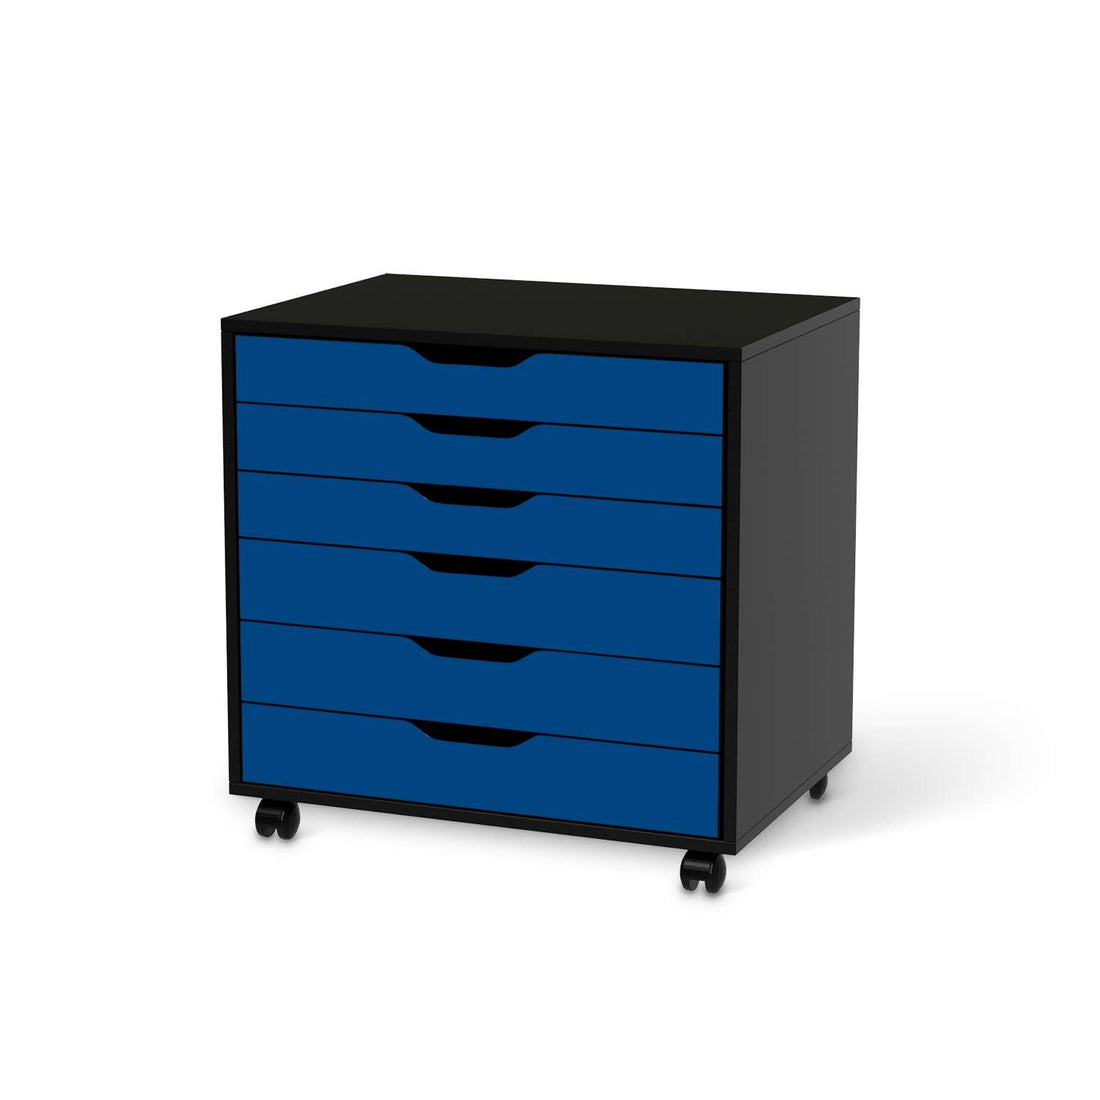 Möbelfolie Blau Dark - IKEA Alex Rollcontainer 6 Schubladen - schwarz